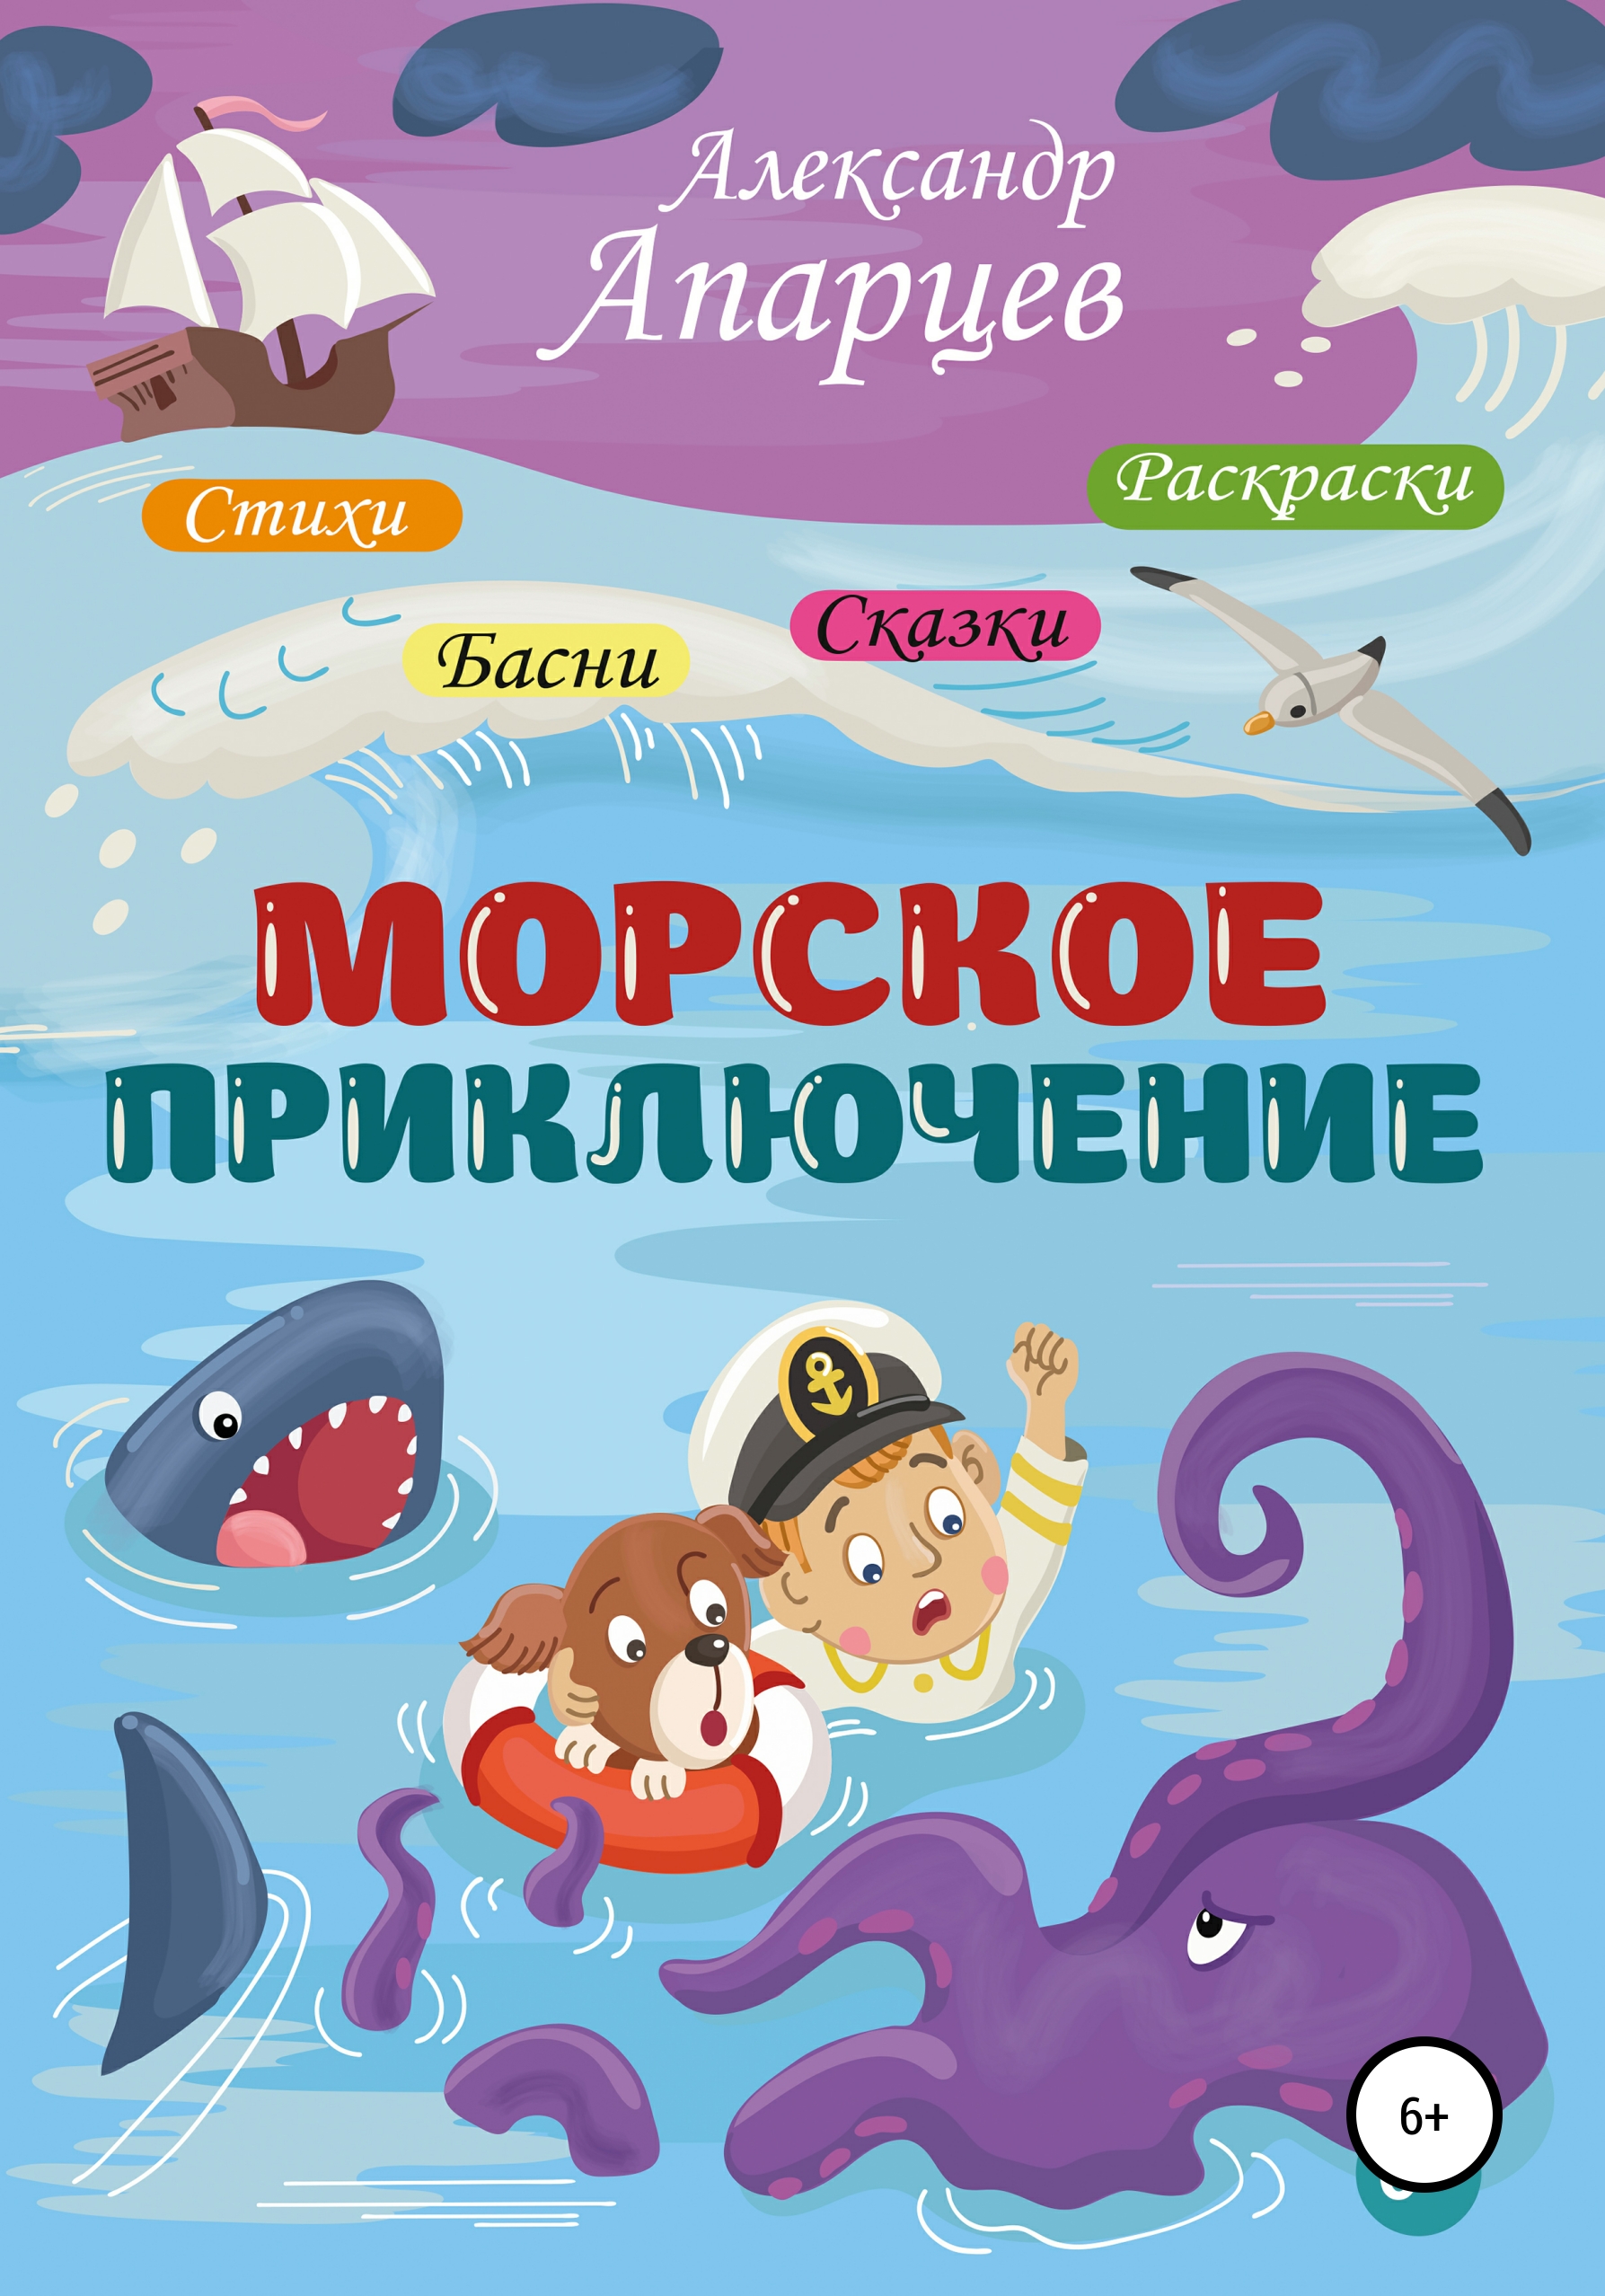 1 морское приключение. Книги про морские приключения для детей. Морское приключение. Морская литература для детей.